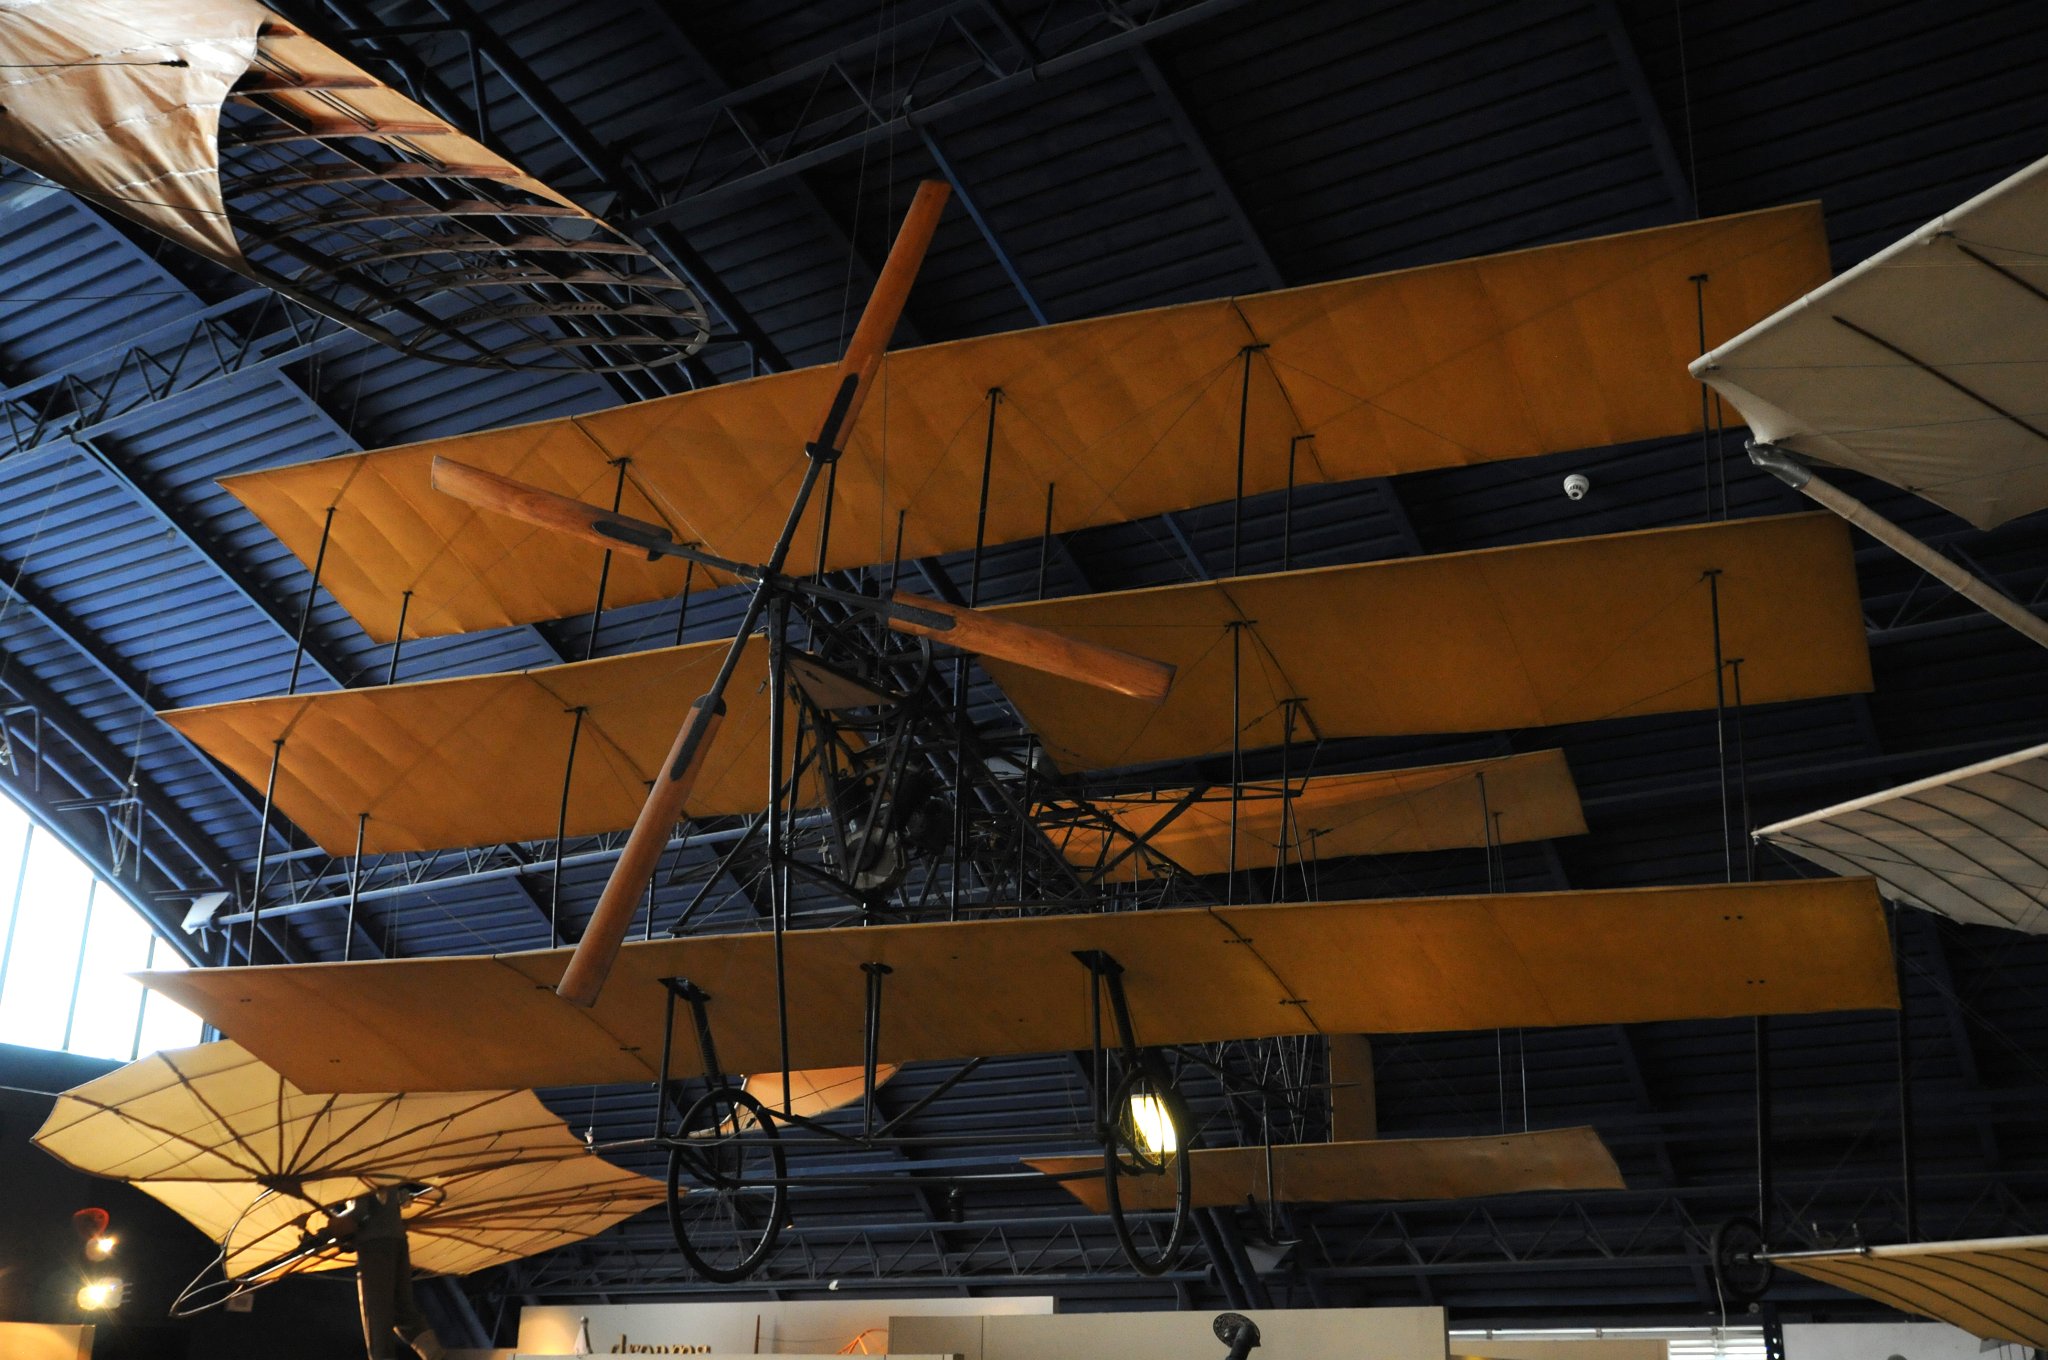 DSC_3021_1.jpg - Roe Triplane, 1900. Byl to první úspěšný letoun postavený mladým inženýrem Alliott Verdon Roe. První let byl dlouhý cca 300m. 